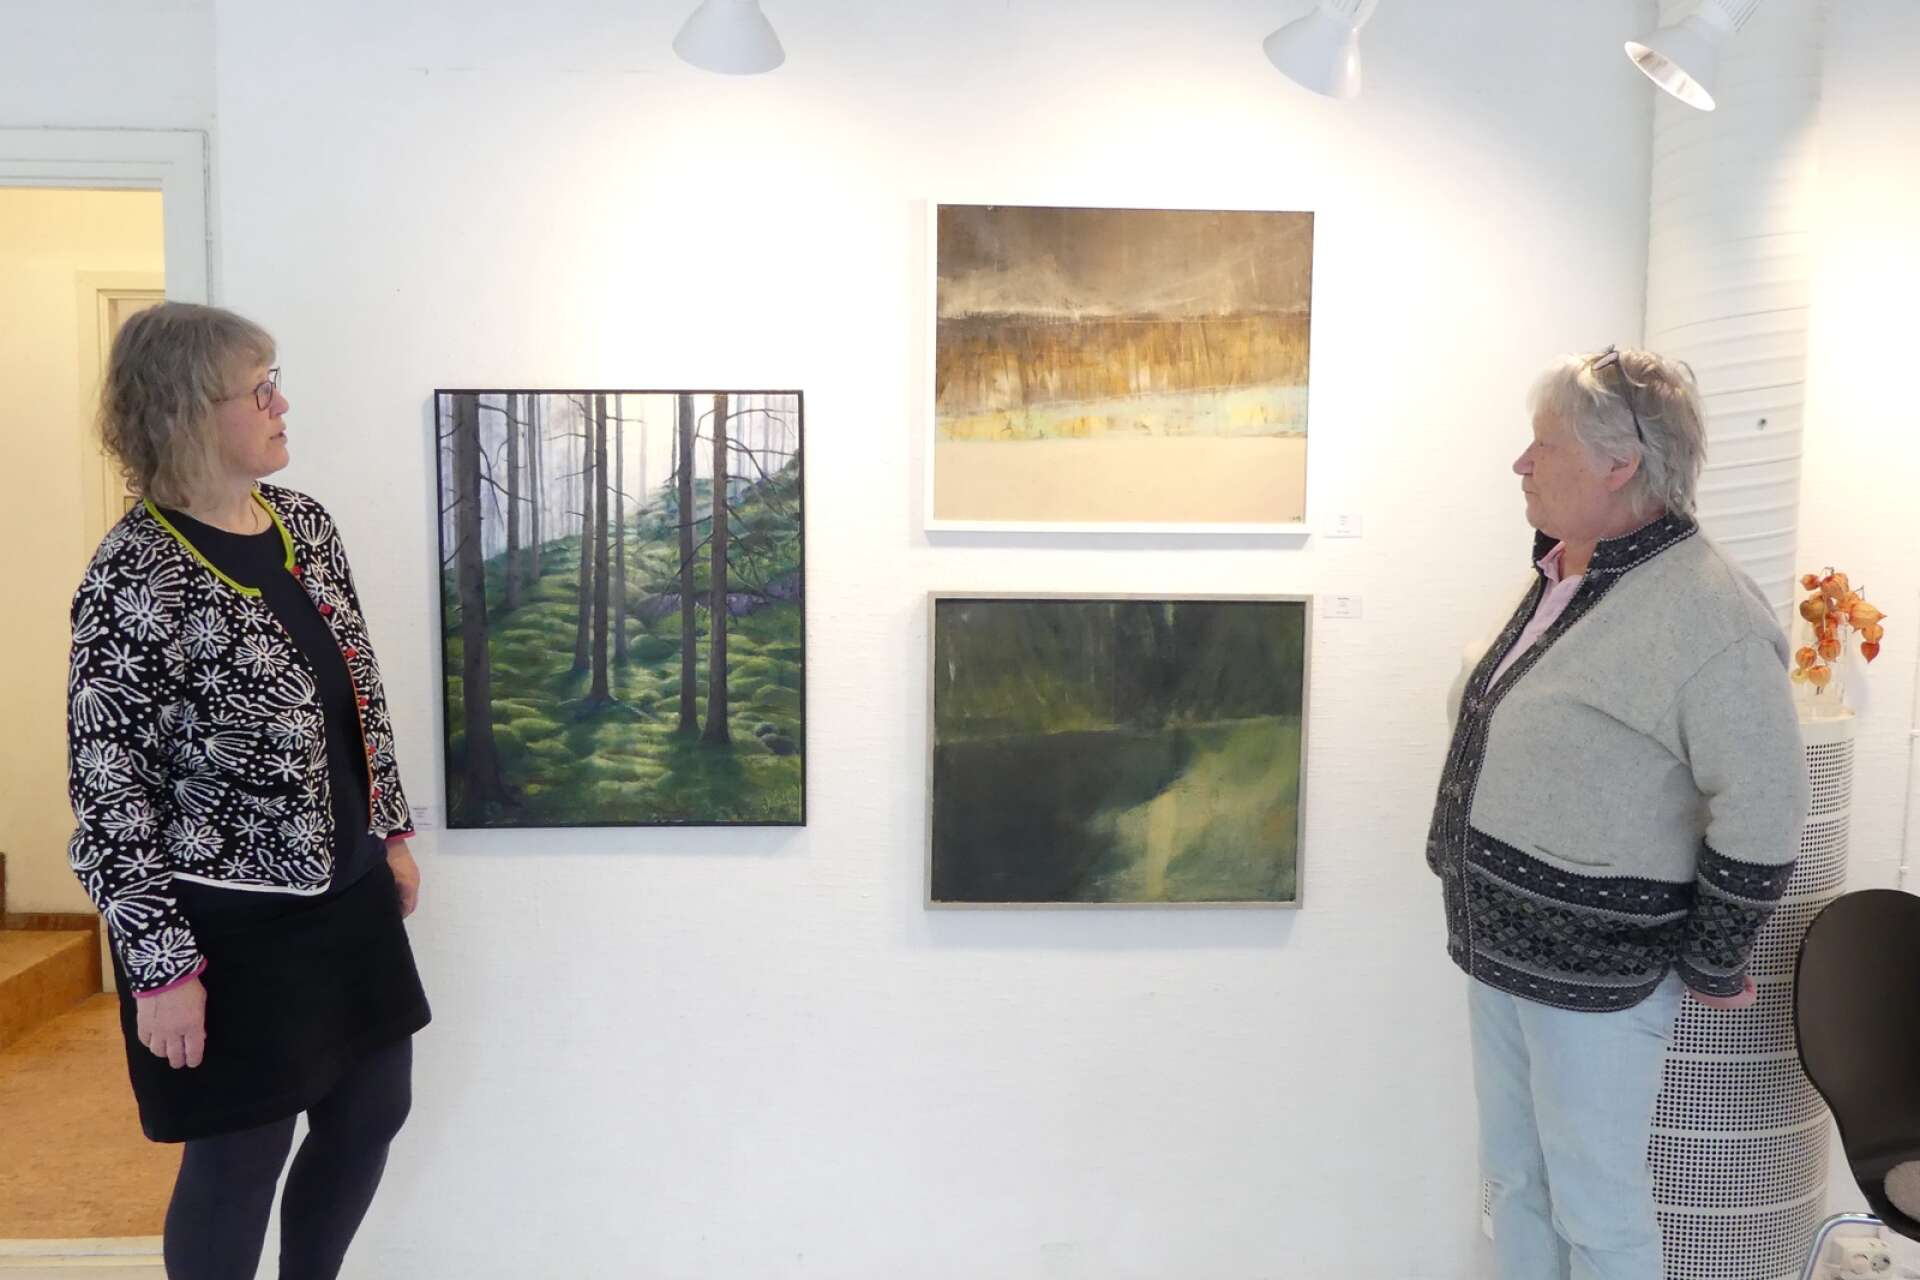 Konstnärerna Märit Gustafsson och Ella Nordal från Dals Ed som ställer ut tillsammans i en utställning de kallar ”Naturligtvis”.